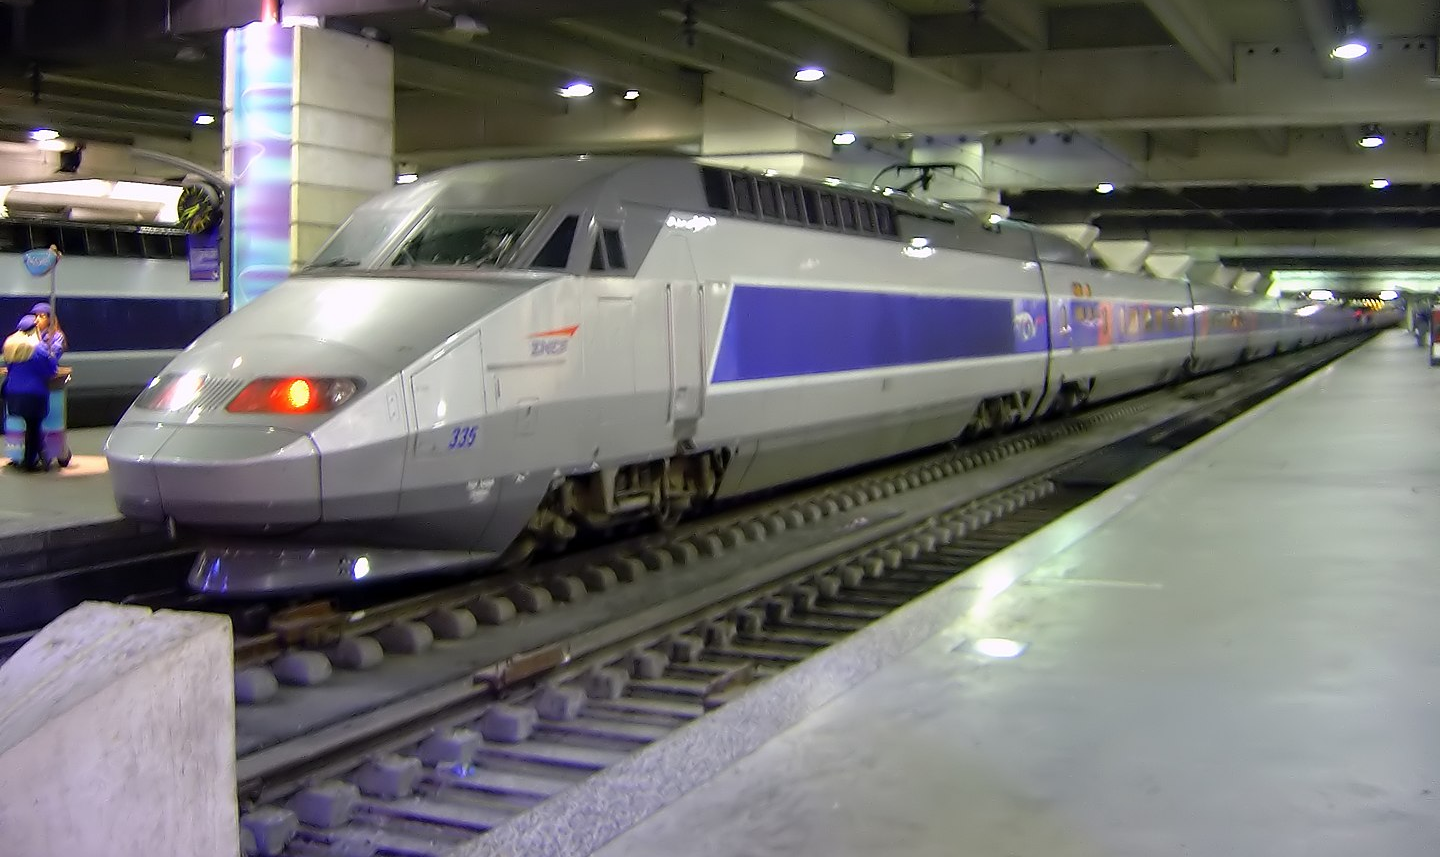 Comboio saiu de Estrasburgo levando 20 pacientes que precisavam de terapia intensiva para hospitais da região Pays de Loire, no oeste do país